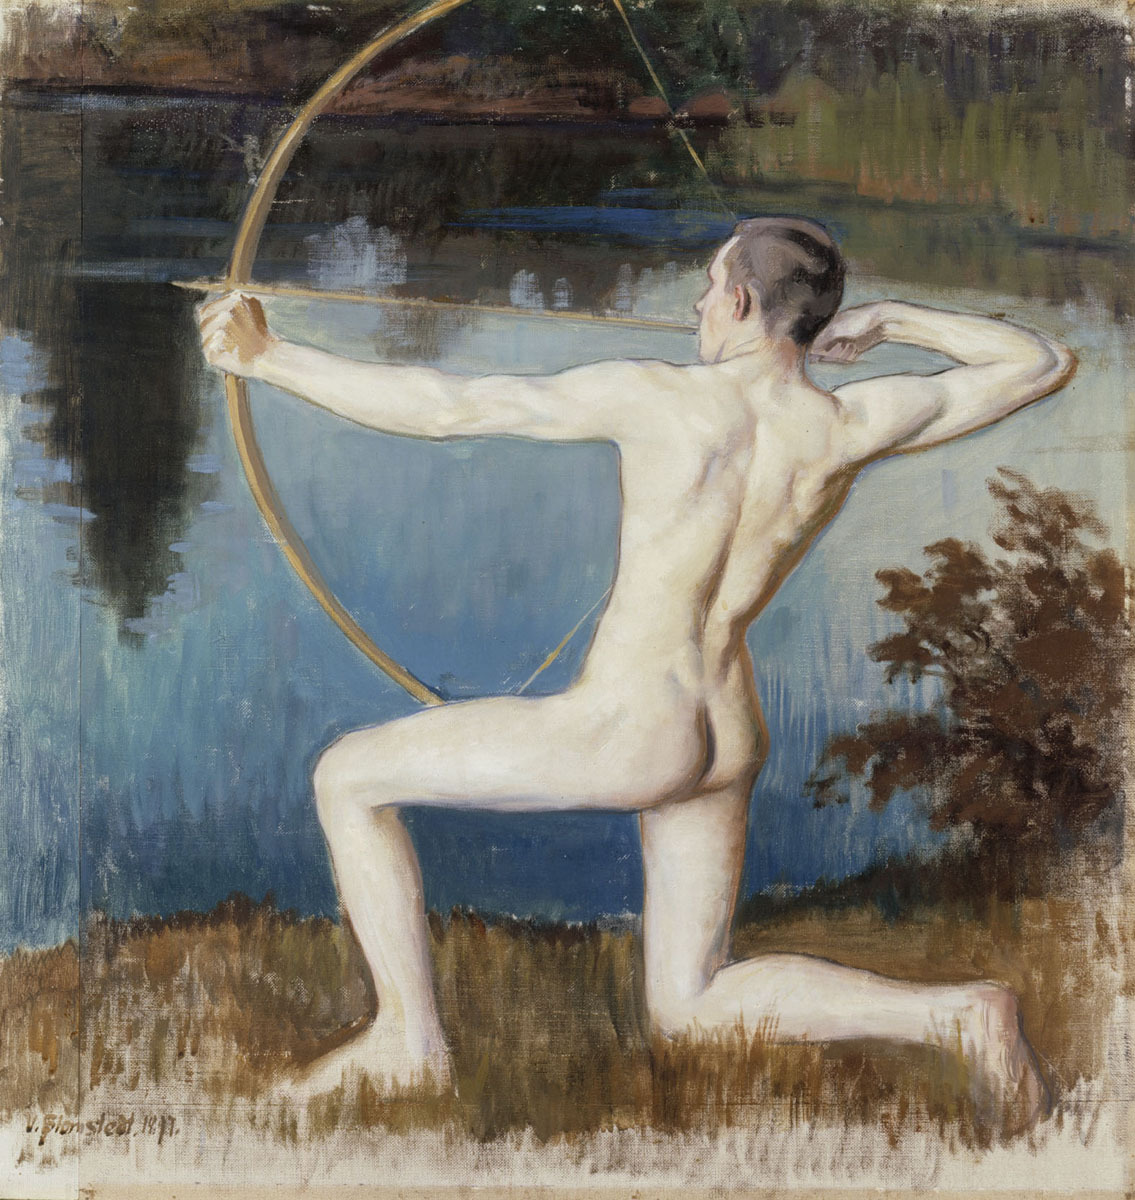 privatecabinetstuff:
â€œ VÃ¤inÃ¶ Blomstedt
Archer (1897)
Finnish National Gallery
â€